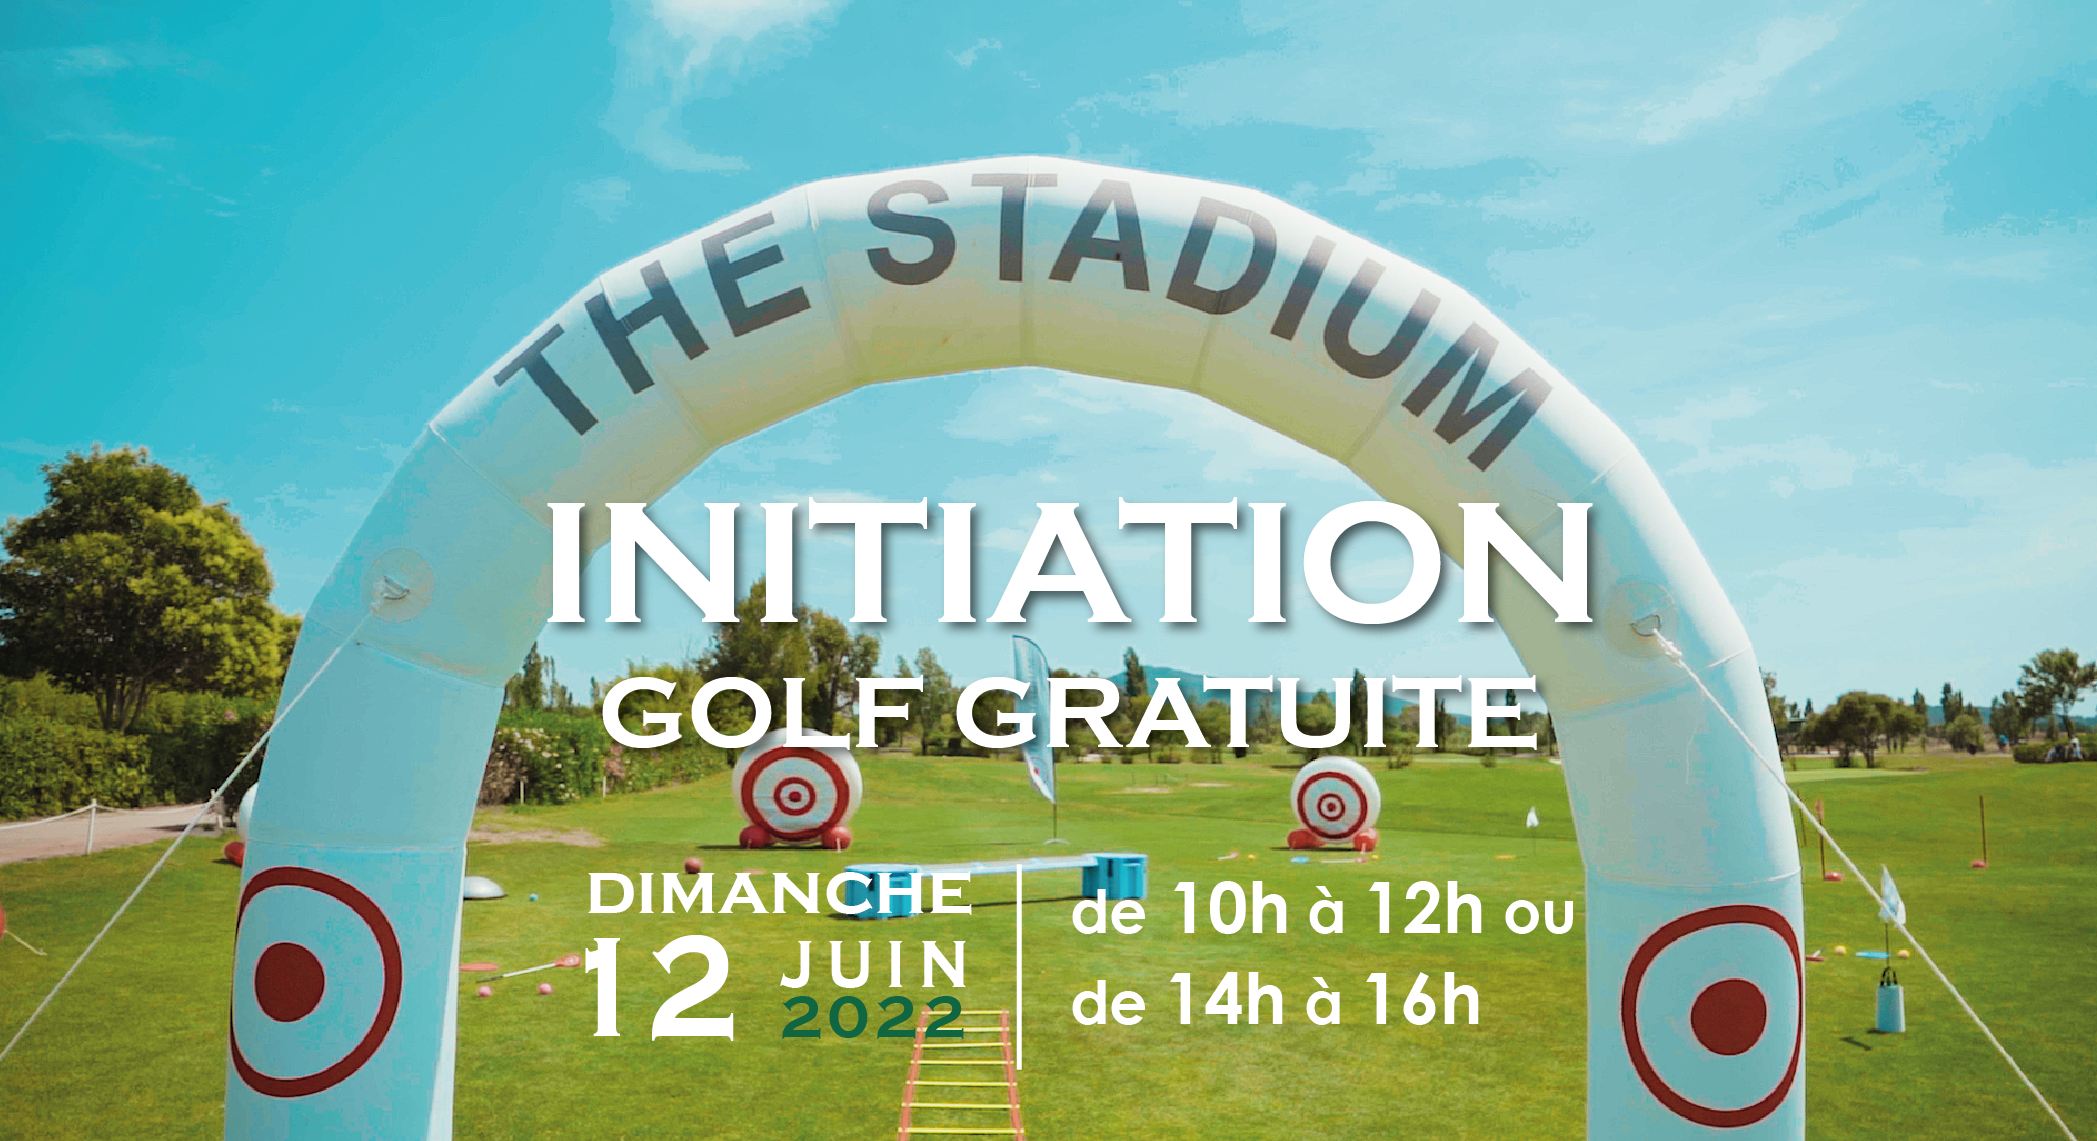 Initiation gratuite au golf – dimanche 12 juin 2022